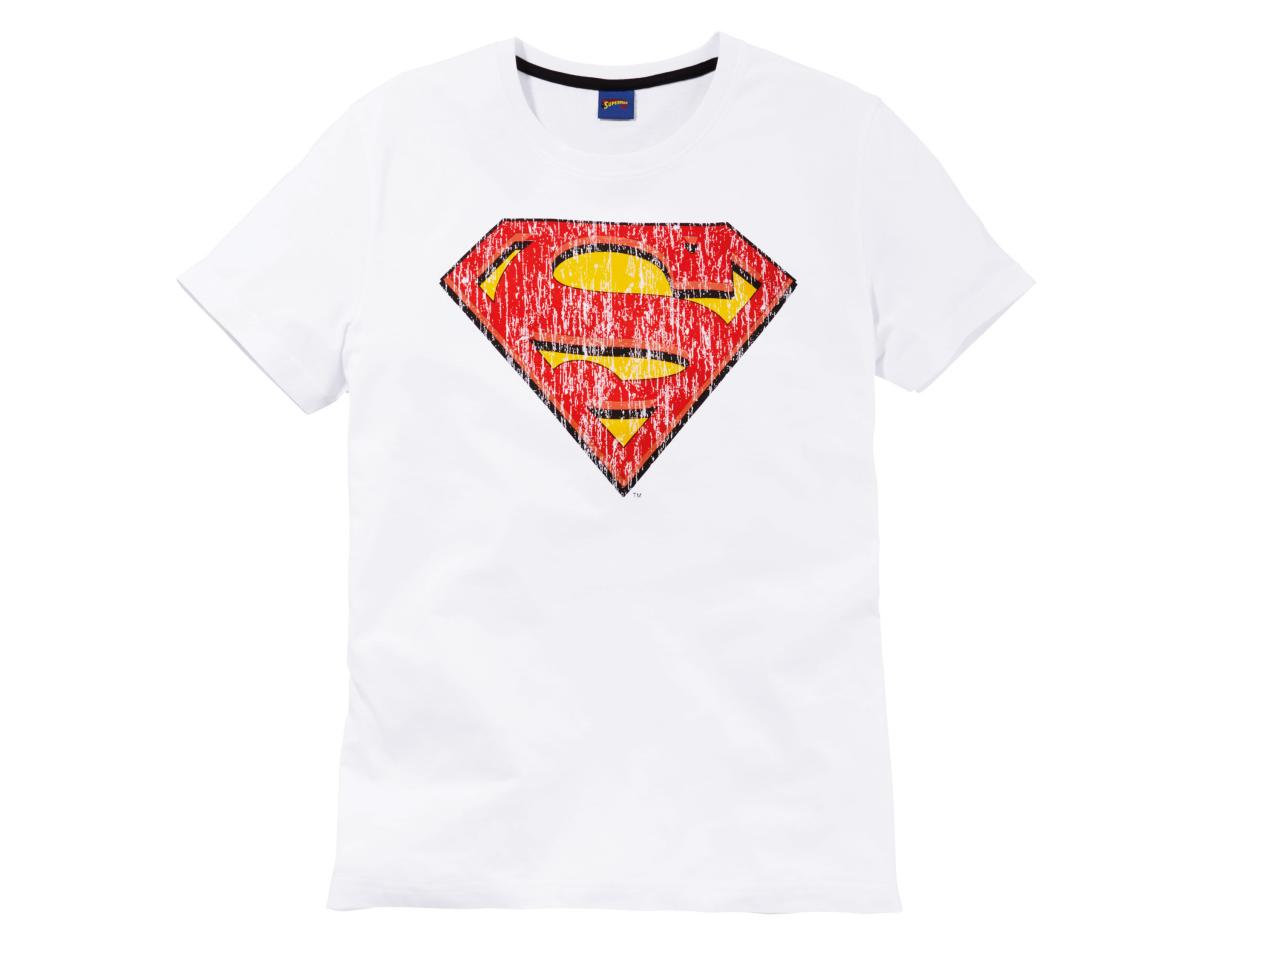 Men's T-Shirt "Batman, Superman"